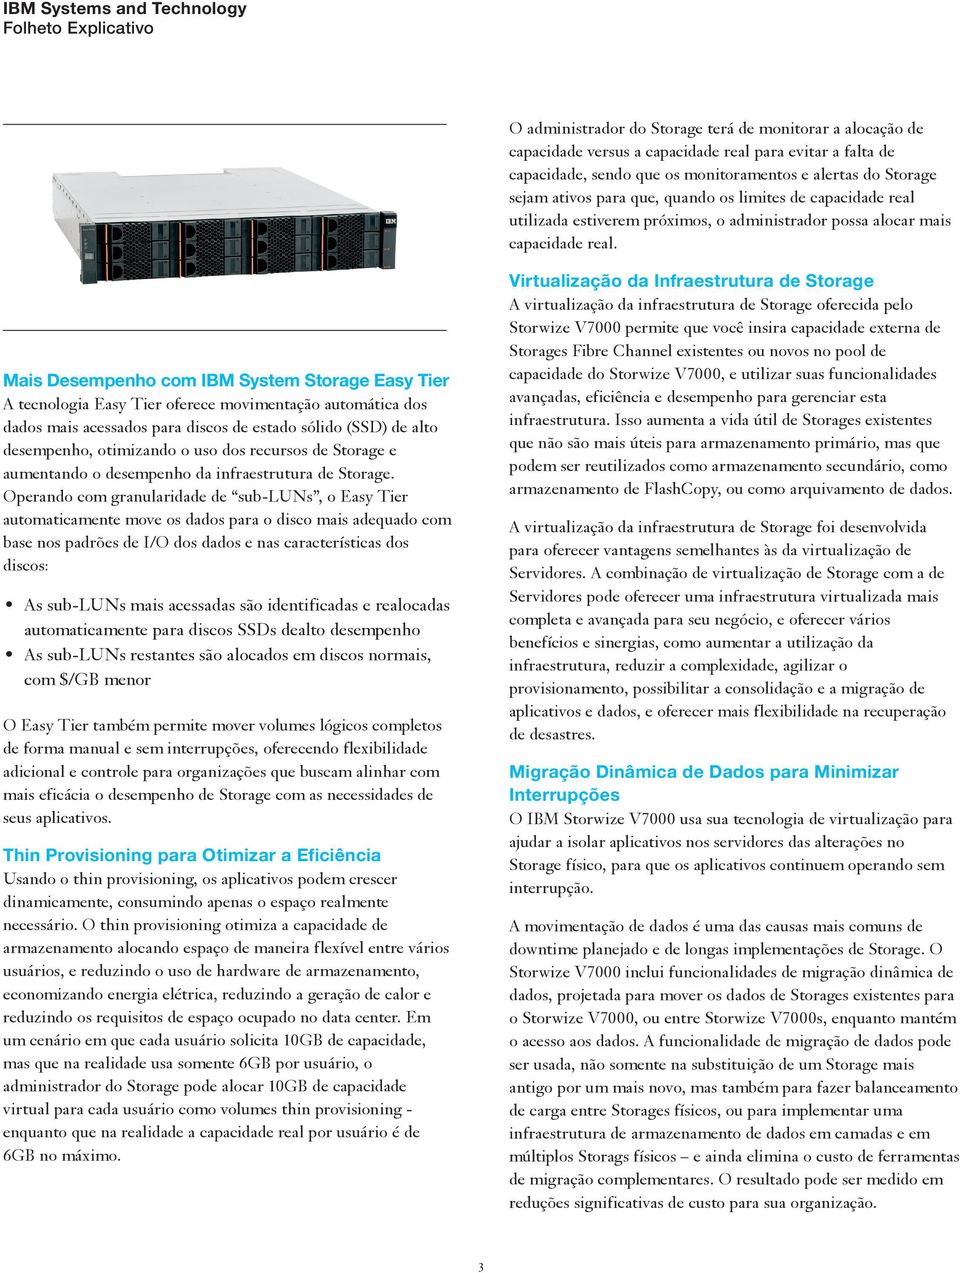 Mais Desempenho com IBM System Storage Easy Tier A tecnologia Easy Tier oferece movimentação automática dos dados mais acessados para discos de estado sólido (SSD) de alto desempenho, otimizando o